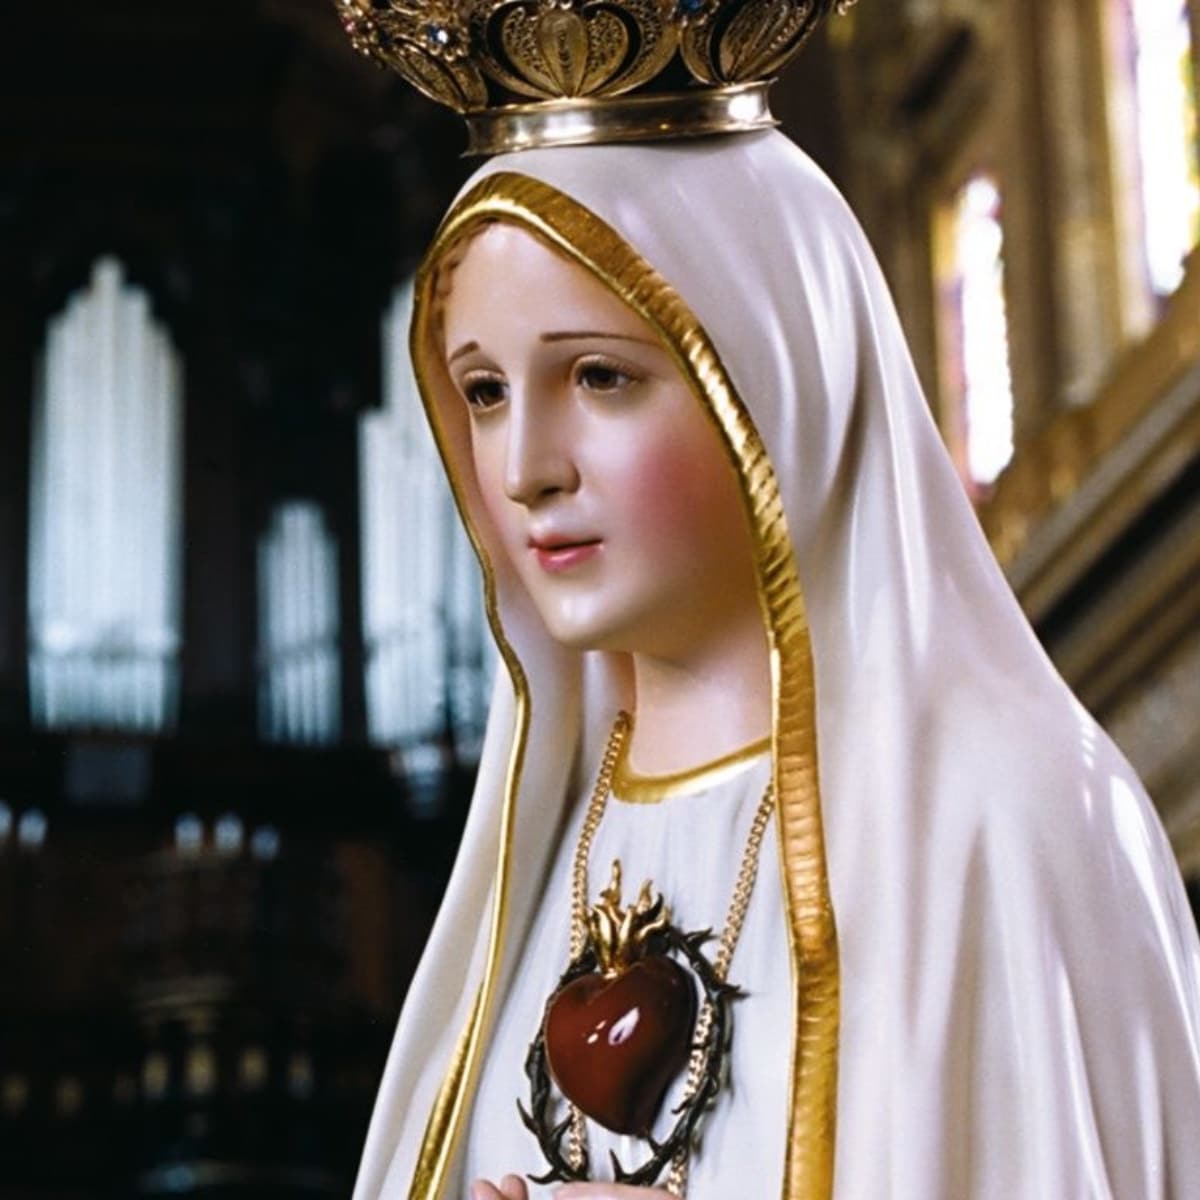 Católicos celebran a la virgen Nuestra Señora de Fátima | Diario 2001